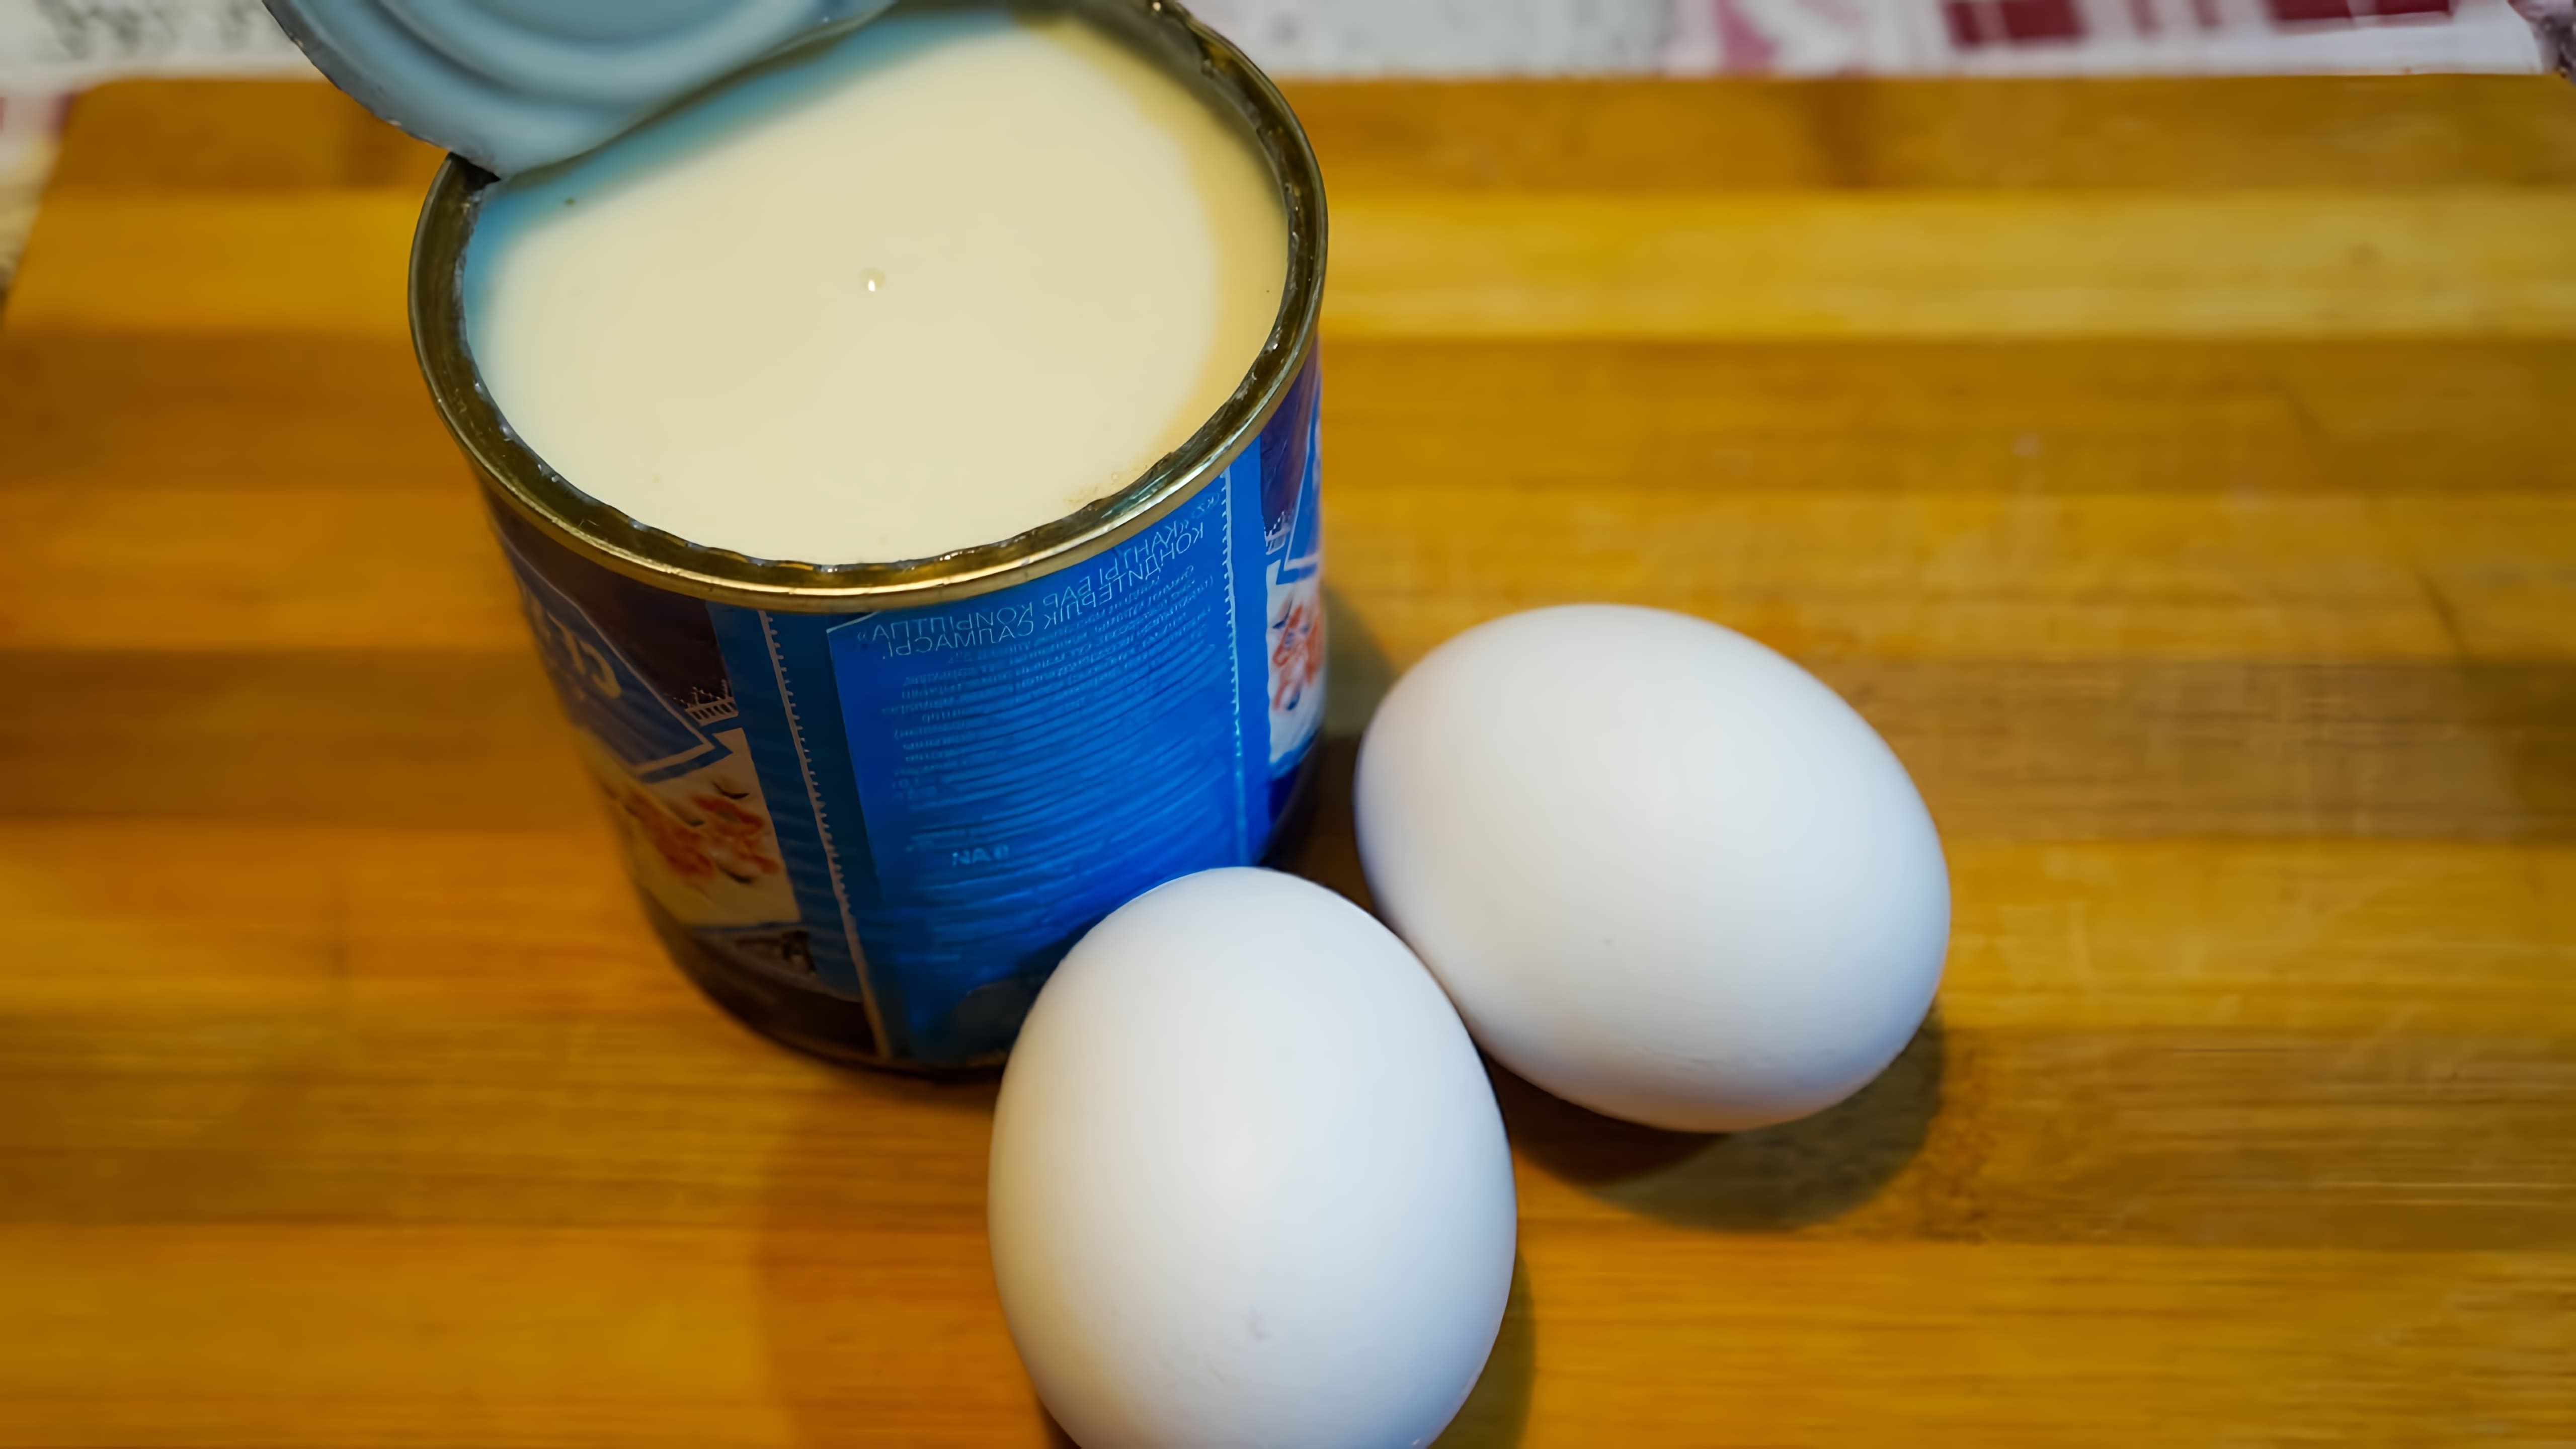 Видео демонстрирует рецепт приготовления небольших блинчиков, используя только сгущенное молоко и пару яиц